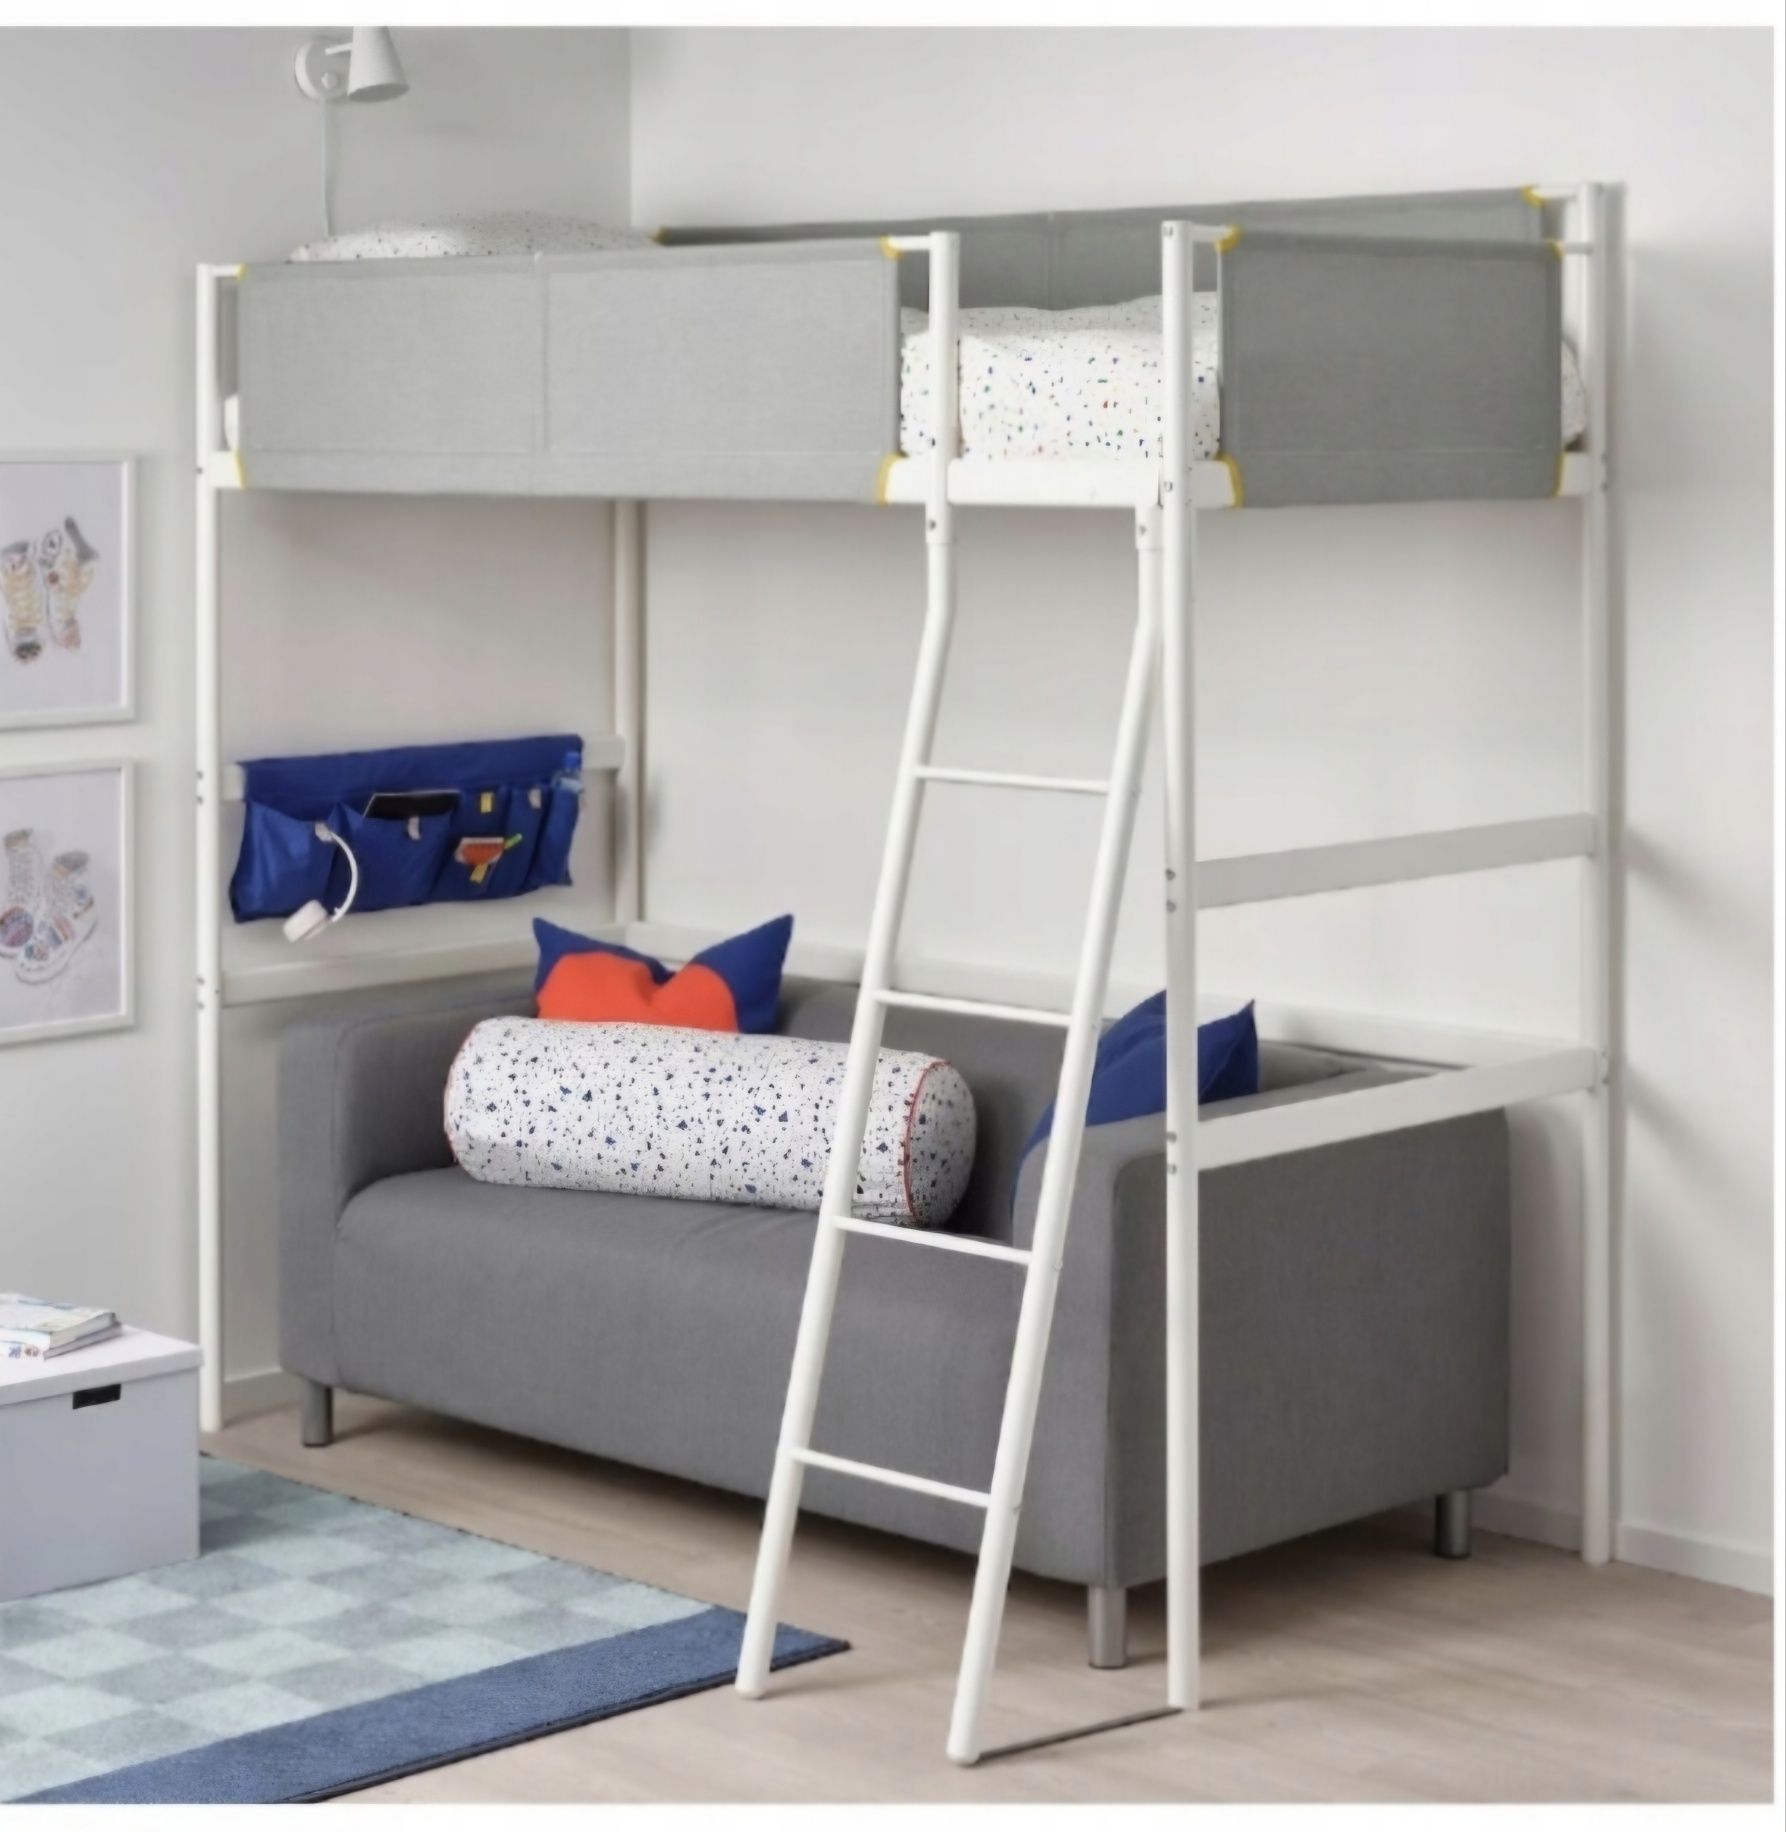 Łóżko piętrowe,antresola IKEA